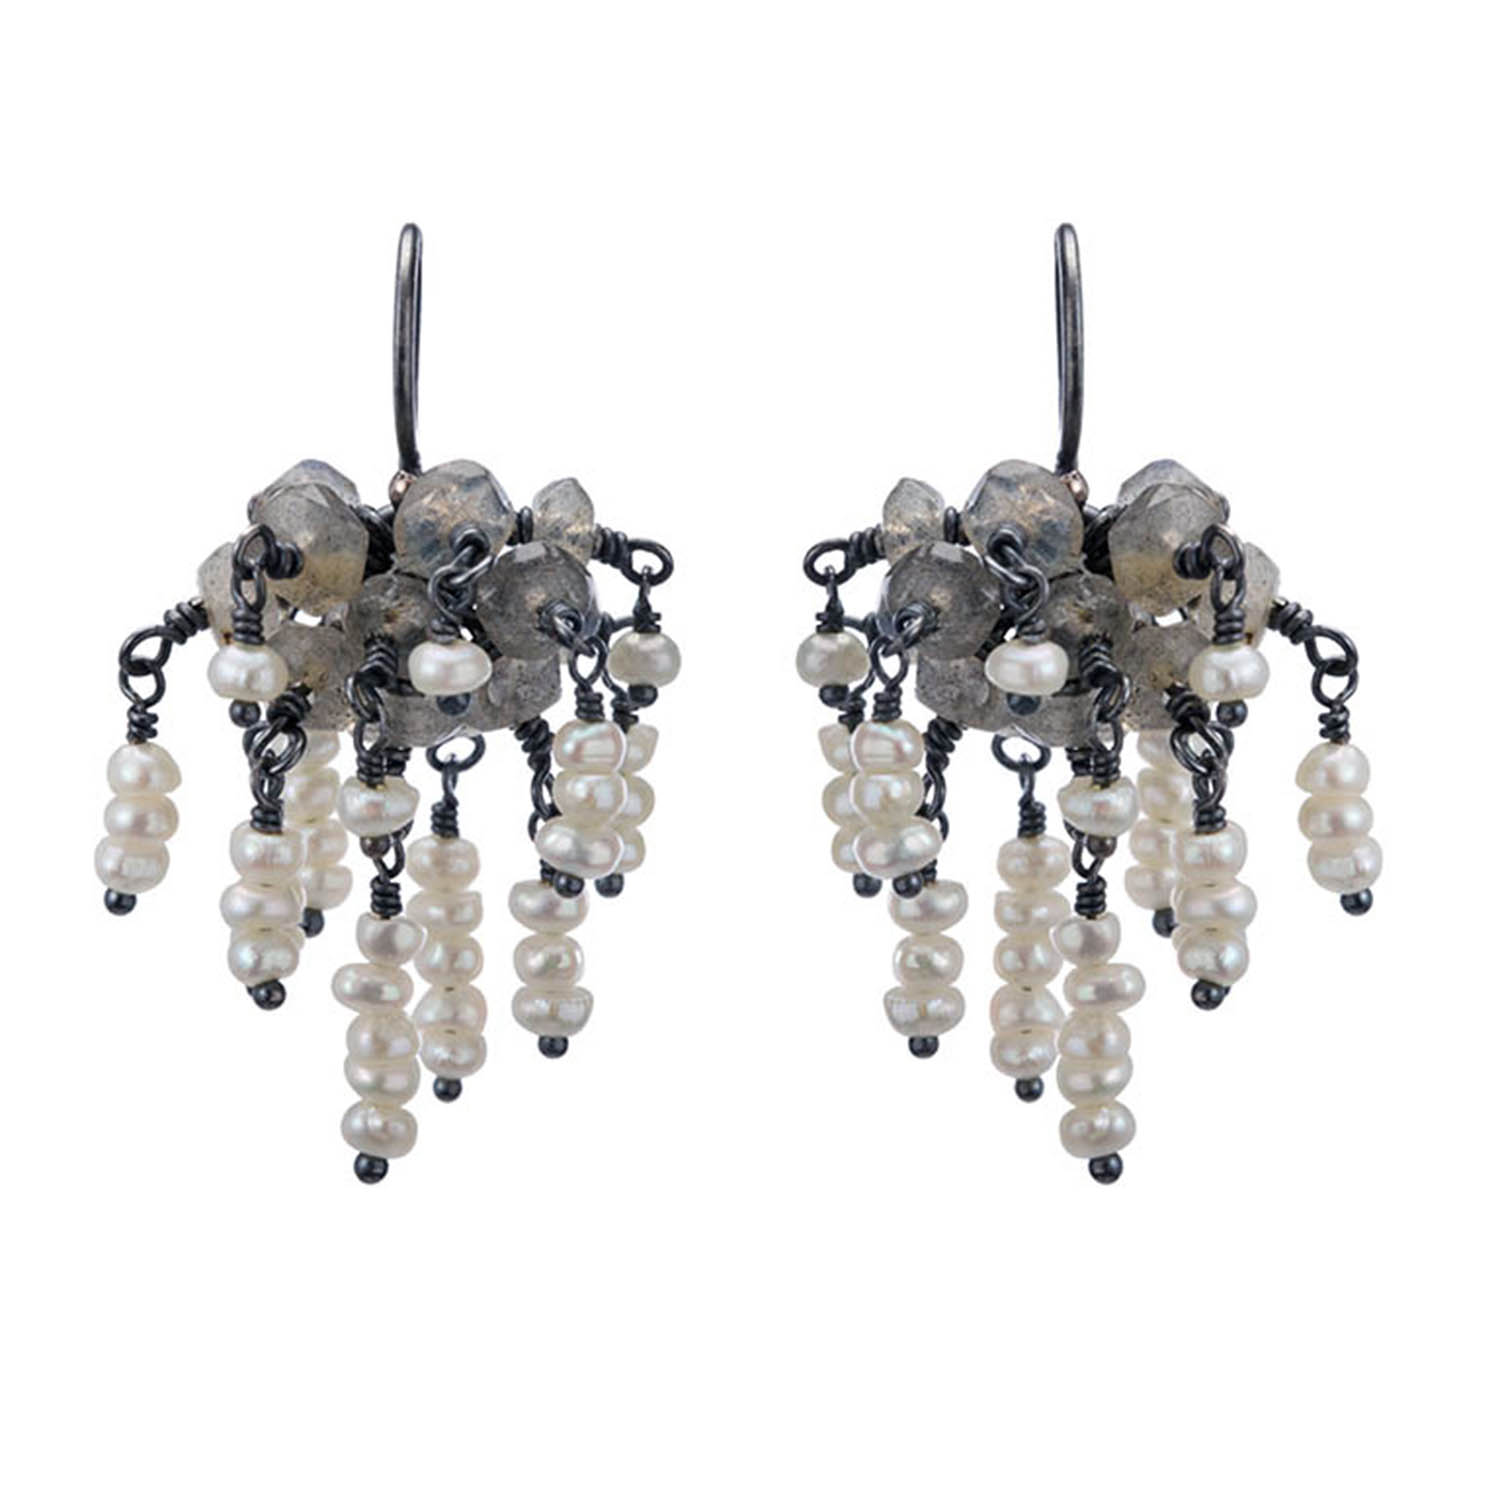 Galena chandelier earrings